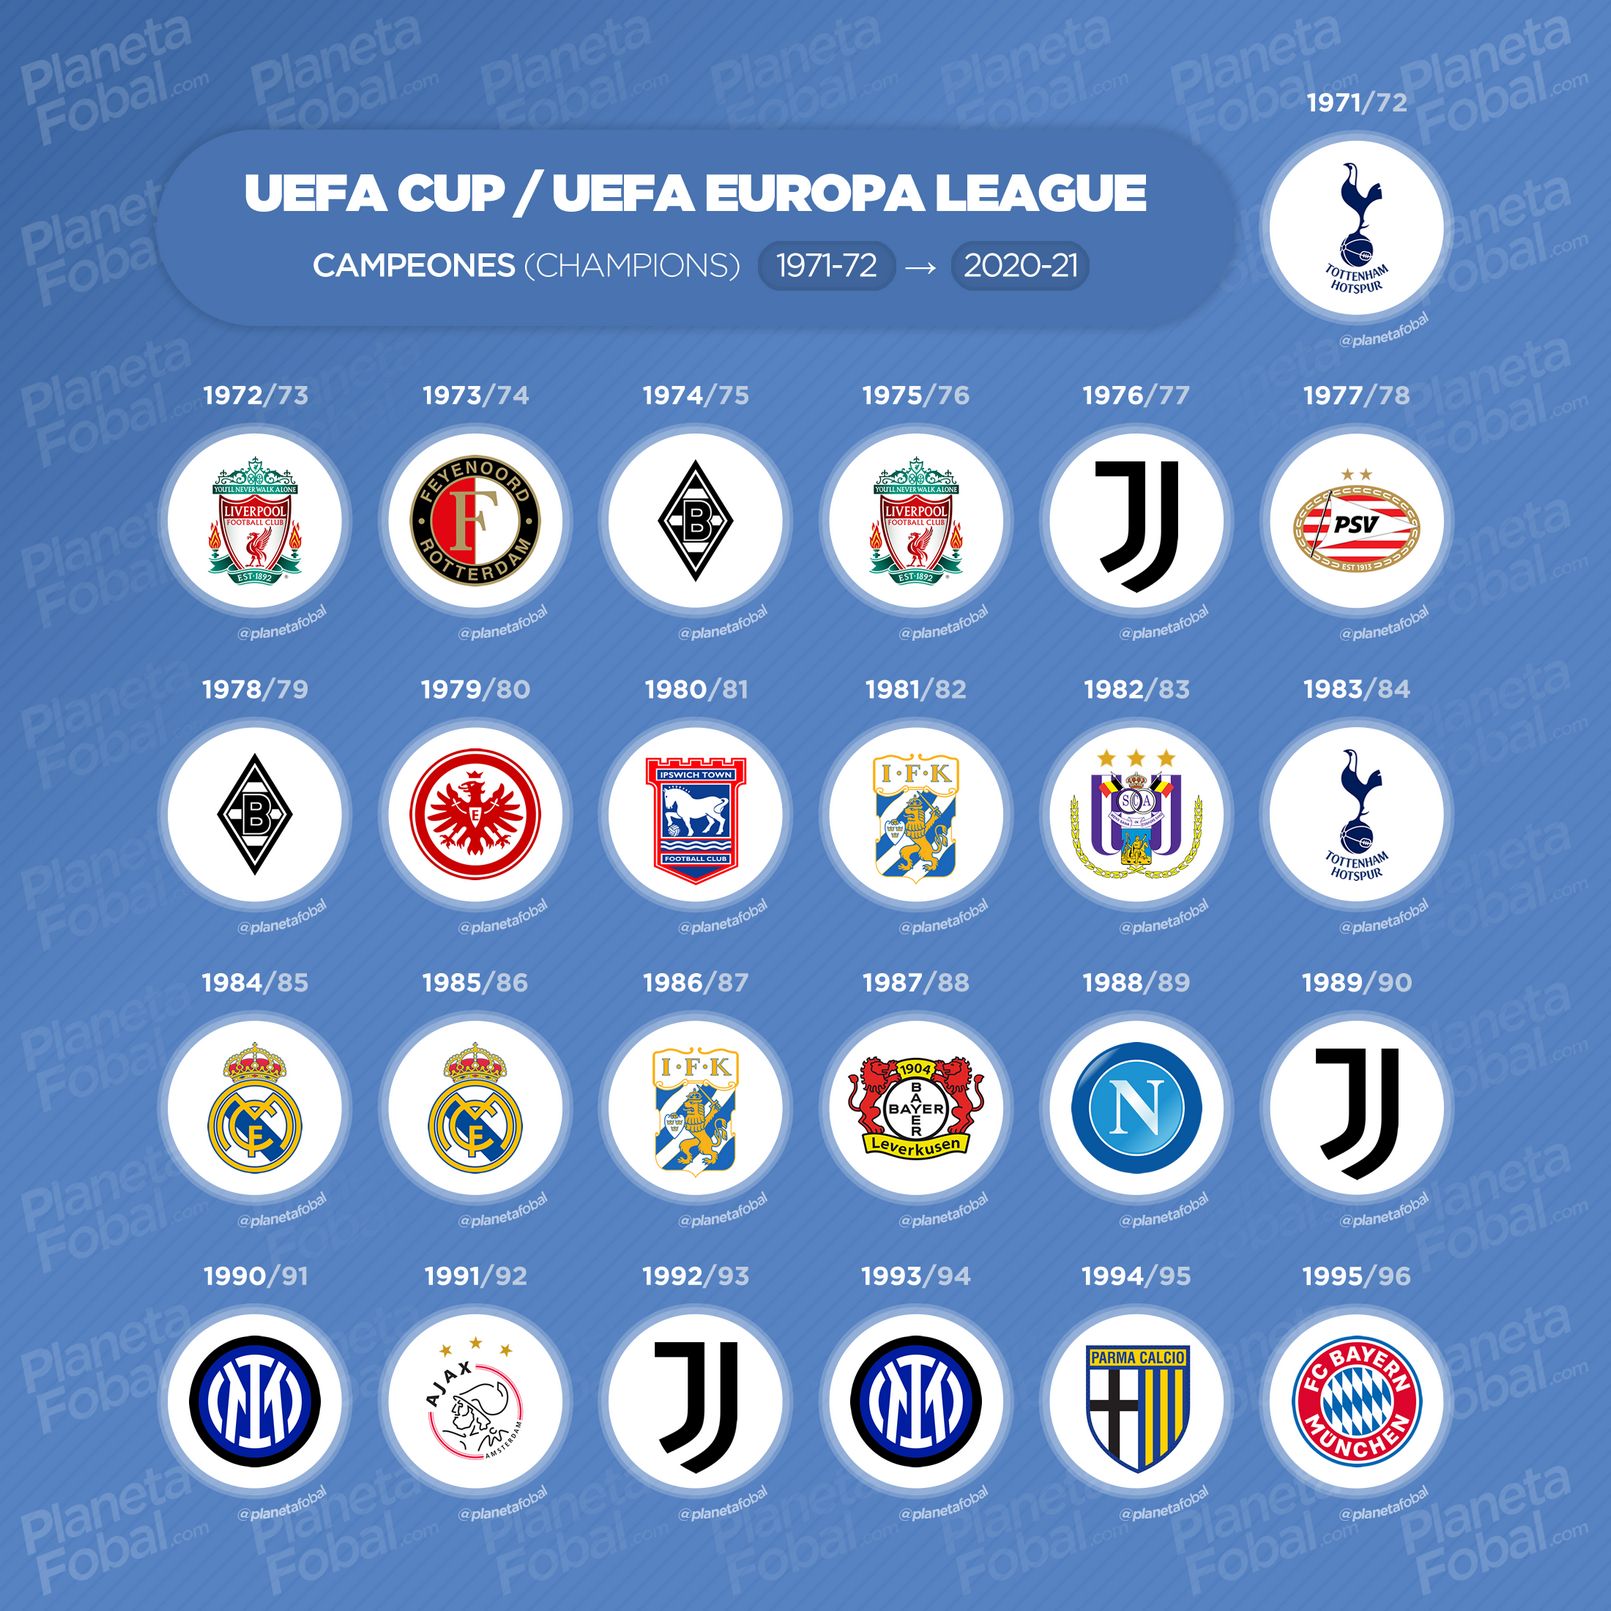 Campeones de la UEFA Europa League (1972-1996)